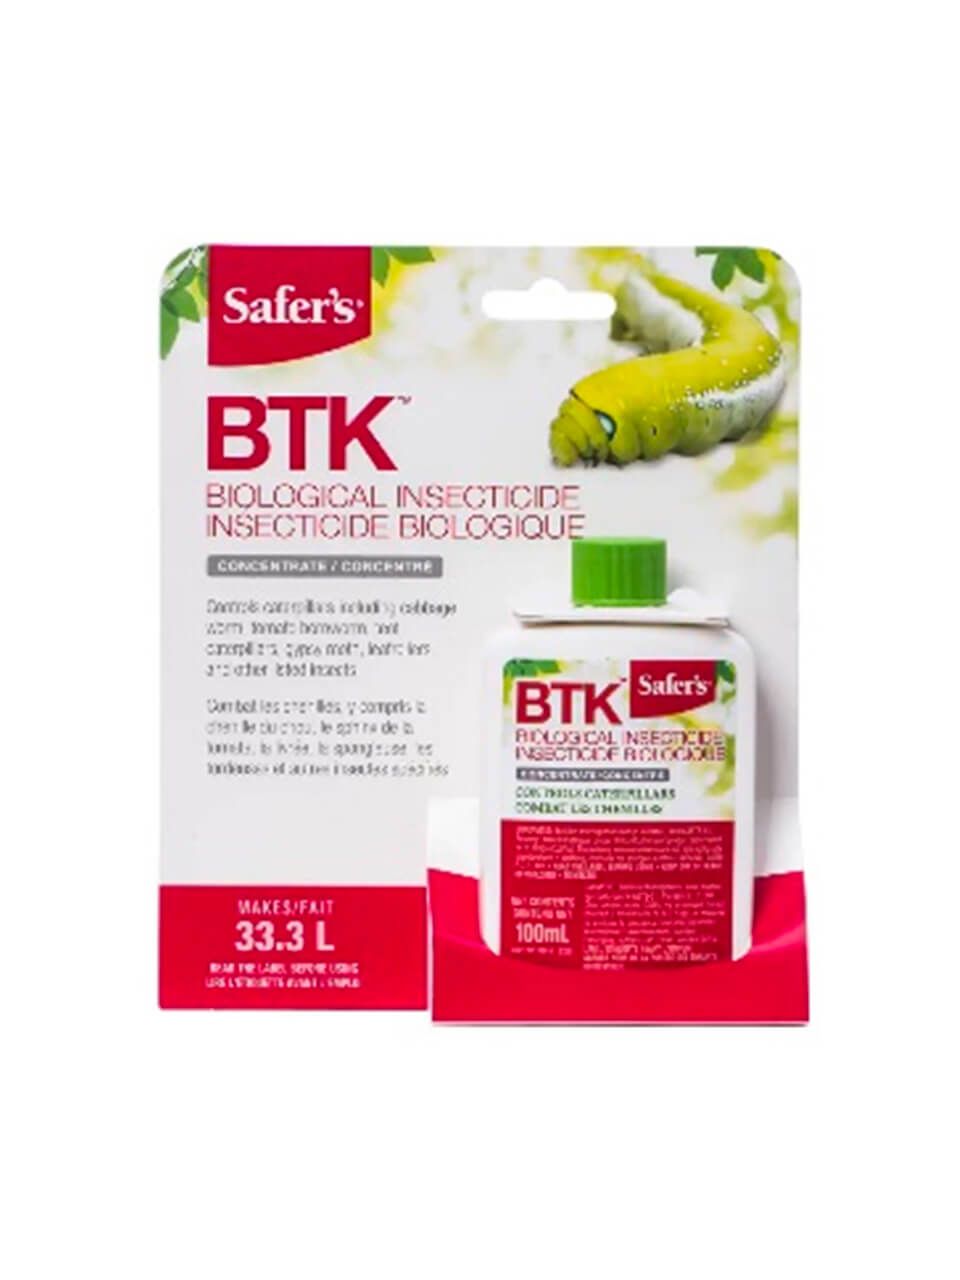 BTK biological insecticide